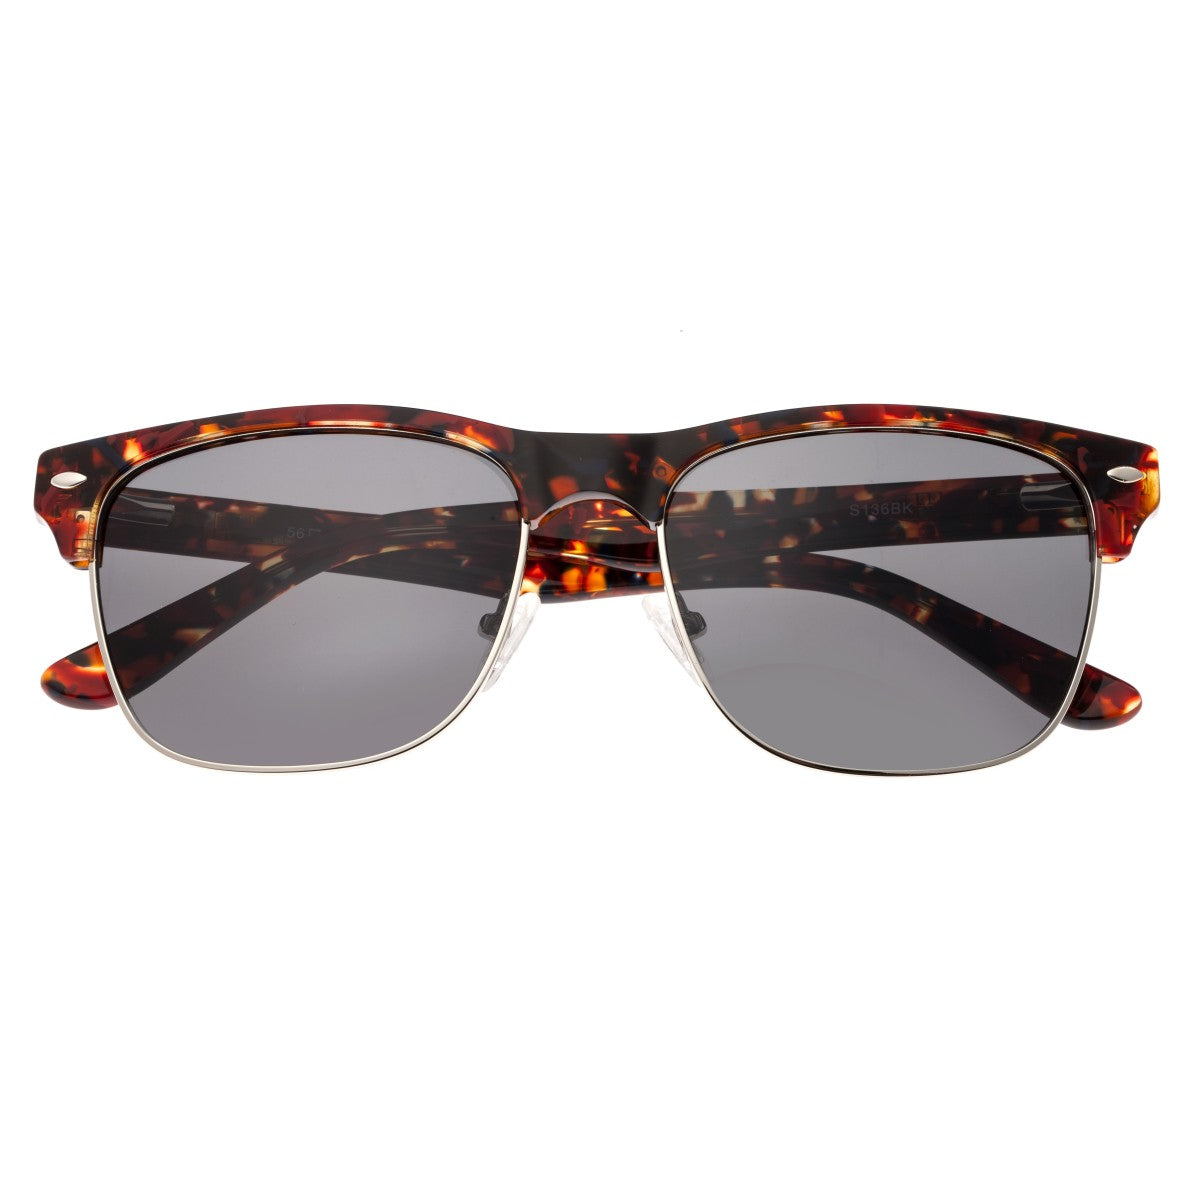 Sixty One Waipio Polarized Sunglasses - Dark Brown Tortoise/Black - SIXS136BK